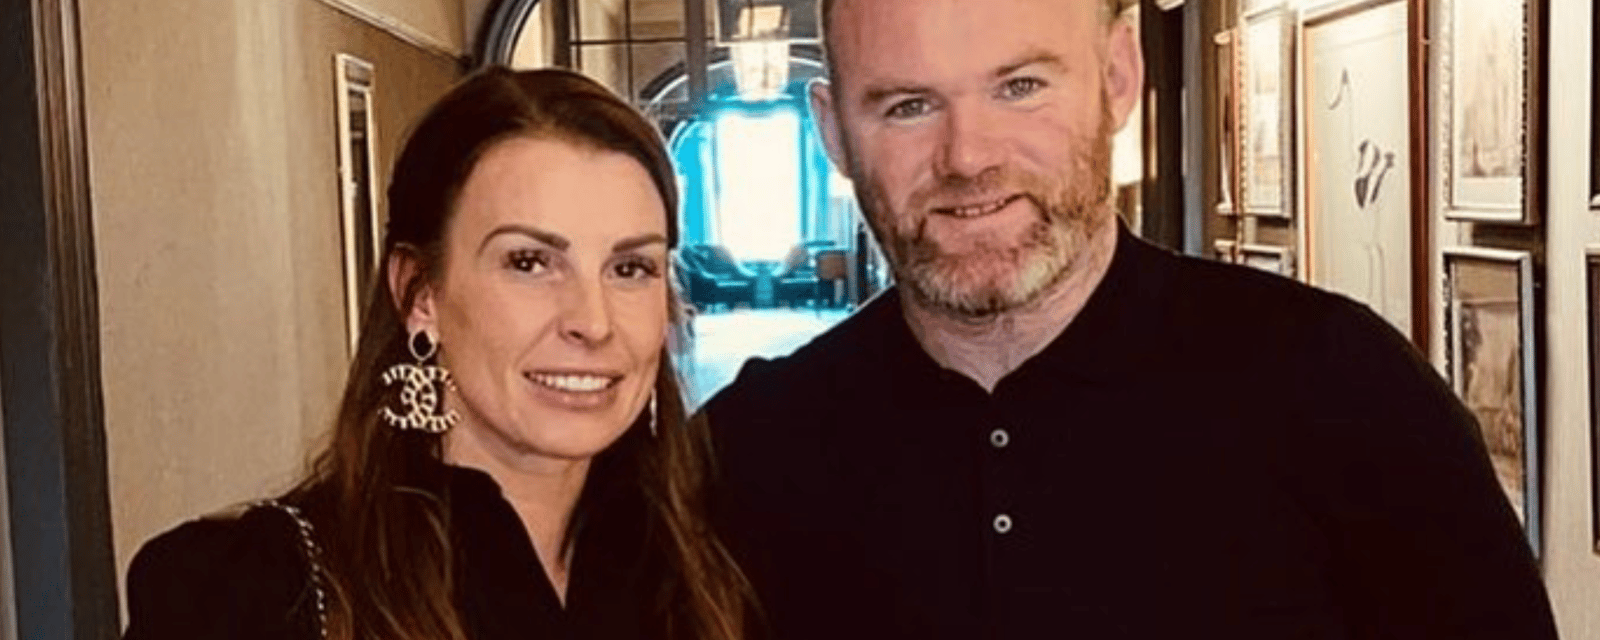 Wayne Rooney n’a plus le droit de sortir sans l’accord de sa femme